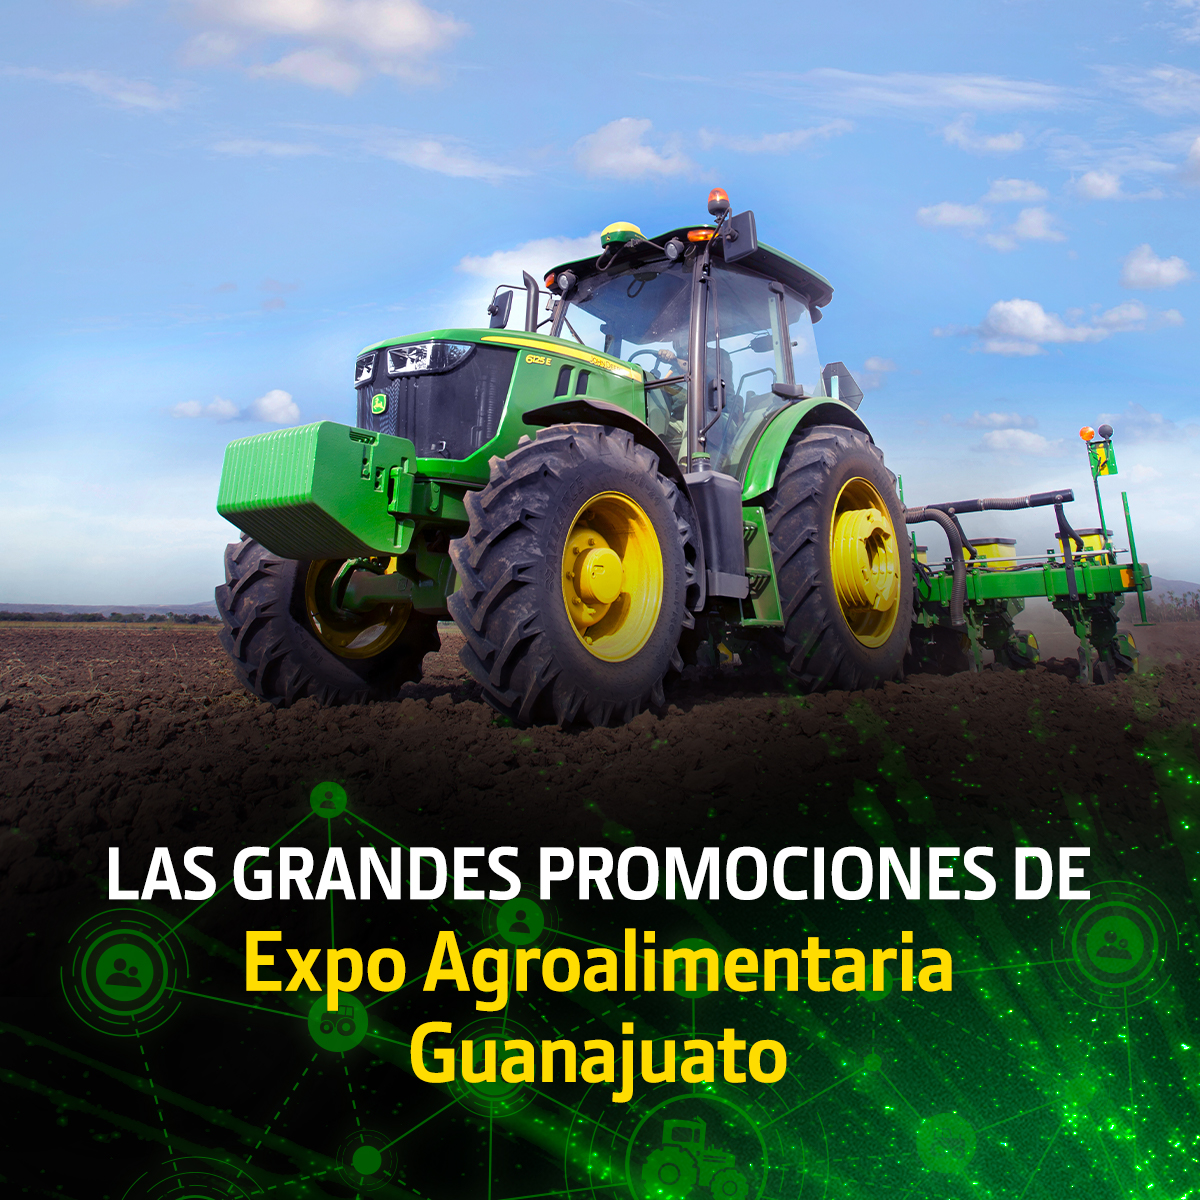 Las grandes promociones por la Expo Agroalimentaria Guanajuato ya están aquí.